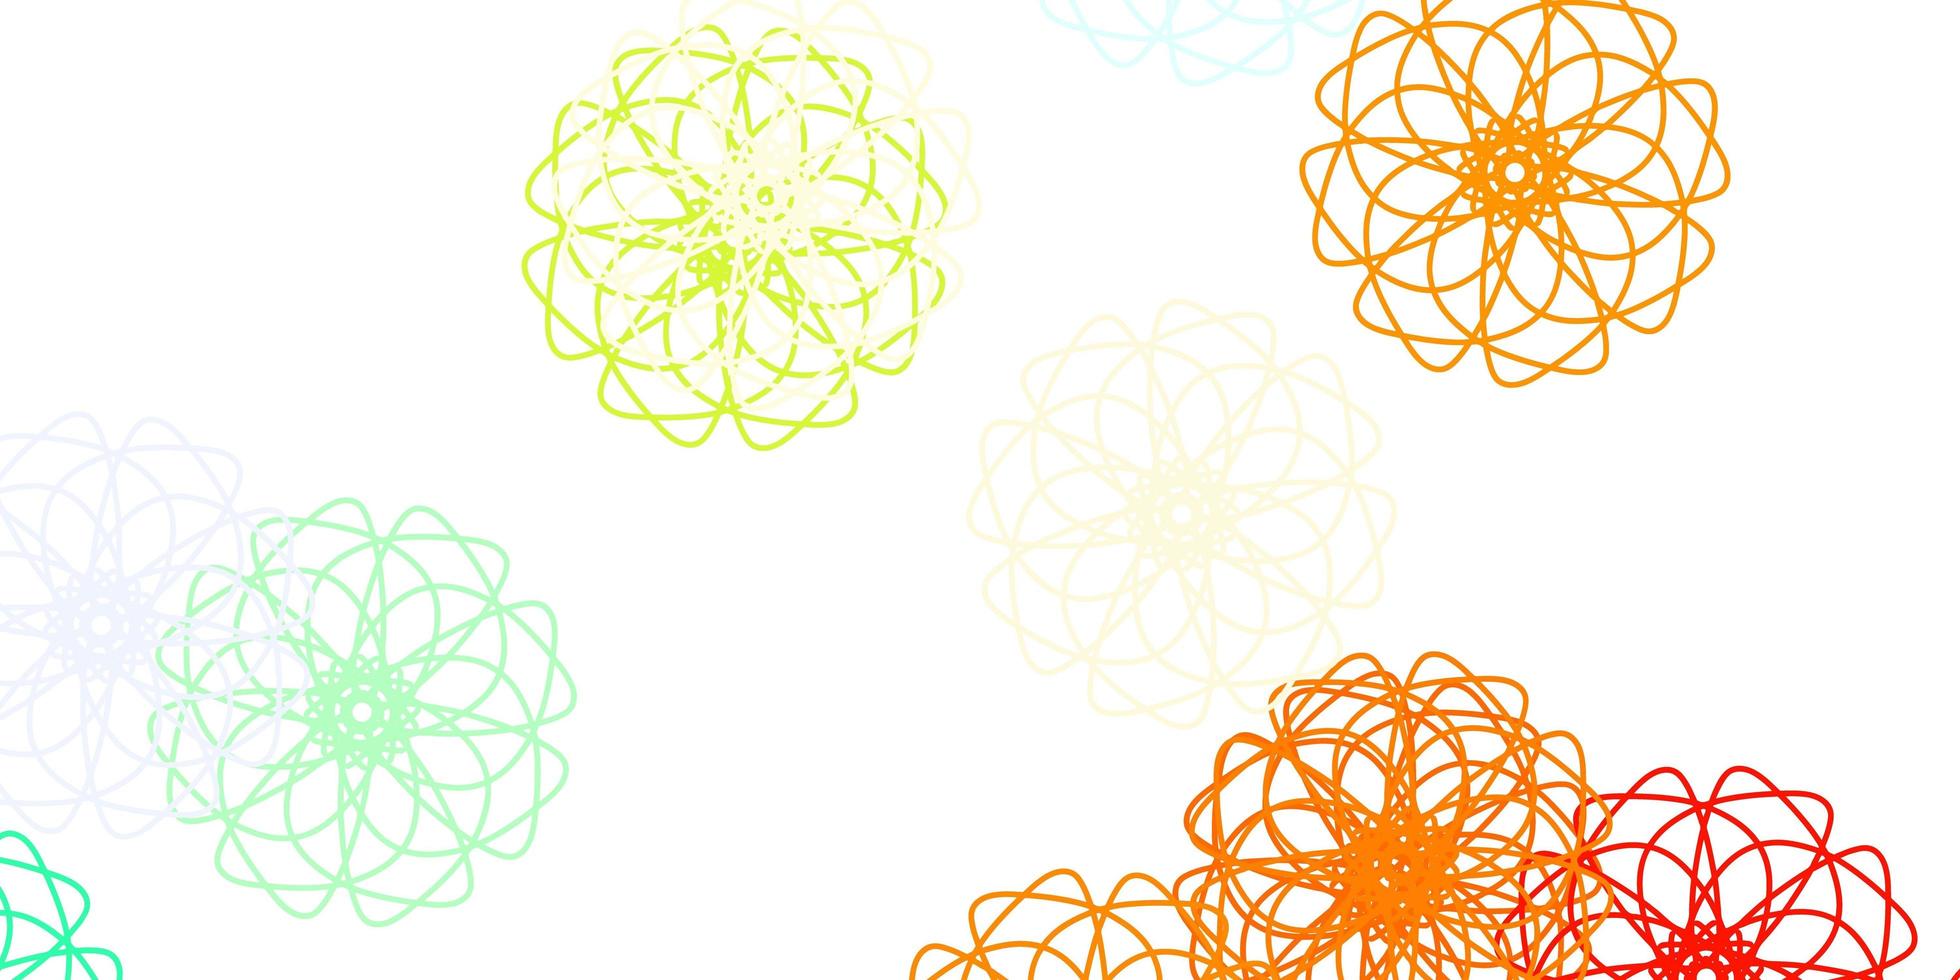 fond de doodle vecteur multicolore clair avec des fleurs.